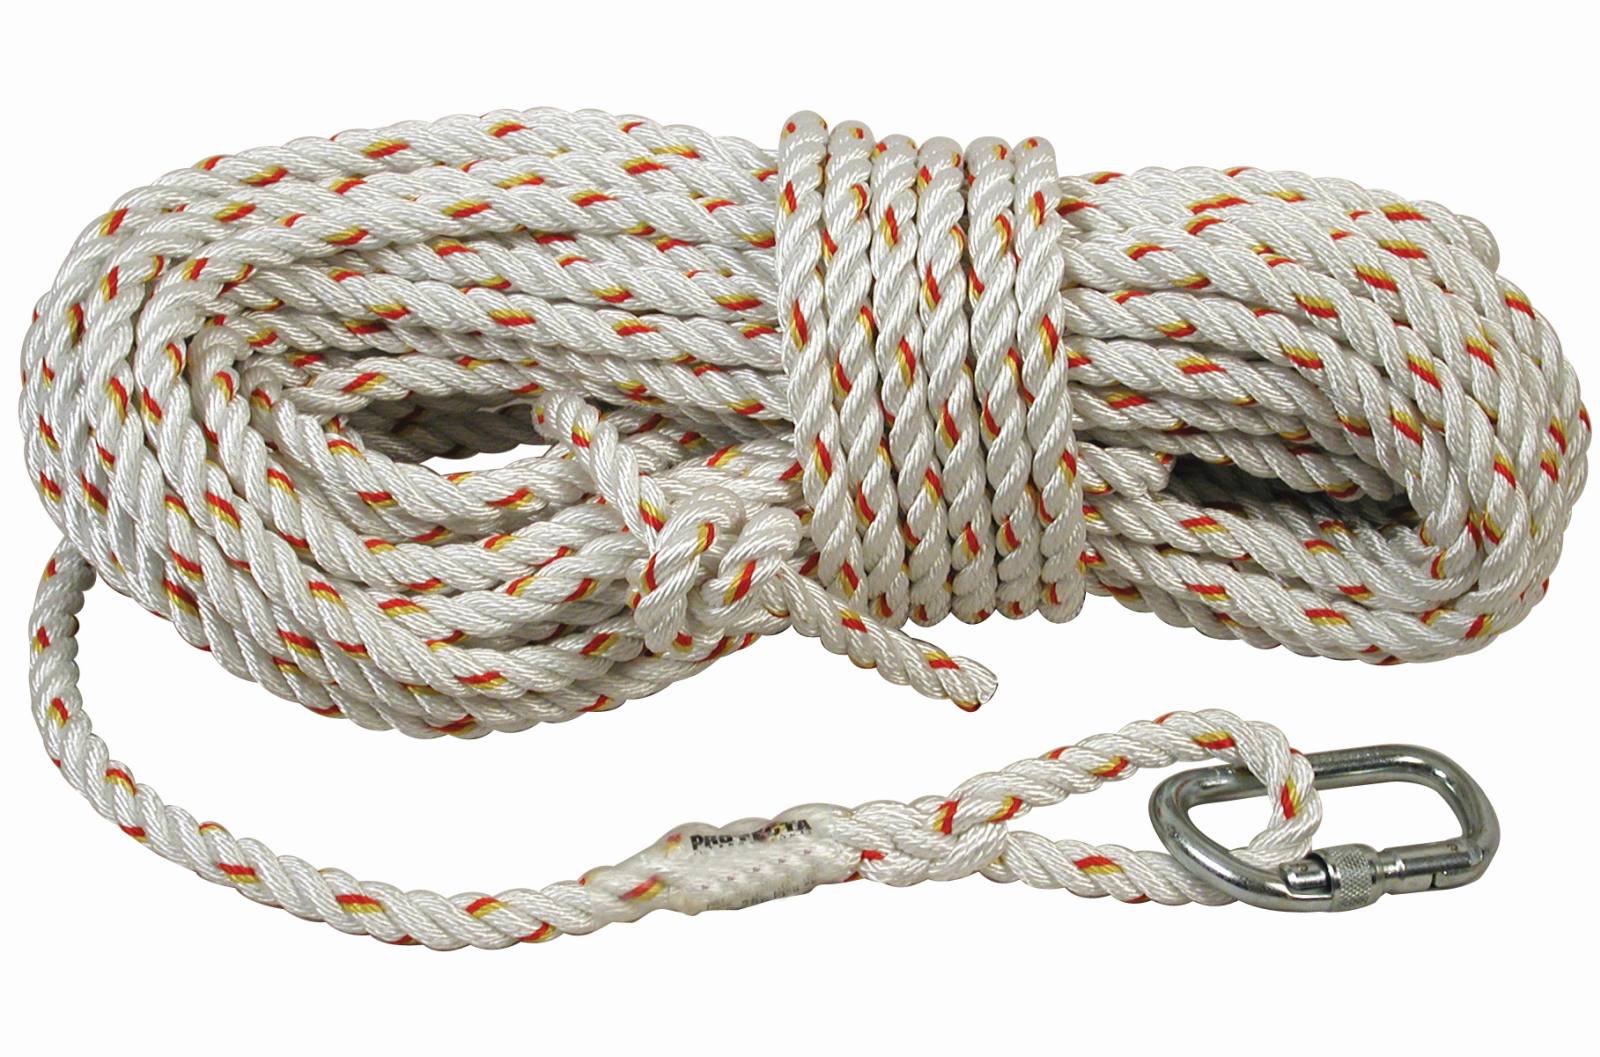 3M PROTECTA Seil für mitlaufendes Auffanggerät Cobra, Länge: 30 m, gedrehtes Seil 14 mm , AJ501 Karabiner Öffnungsweite 17 mm, 30,0 m